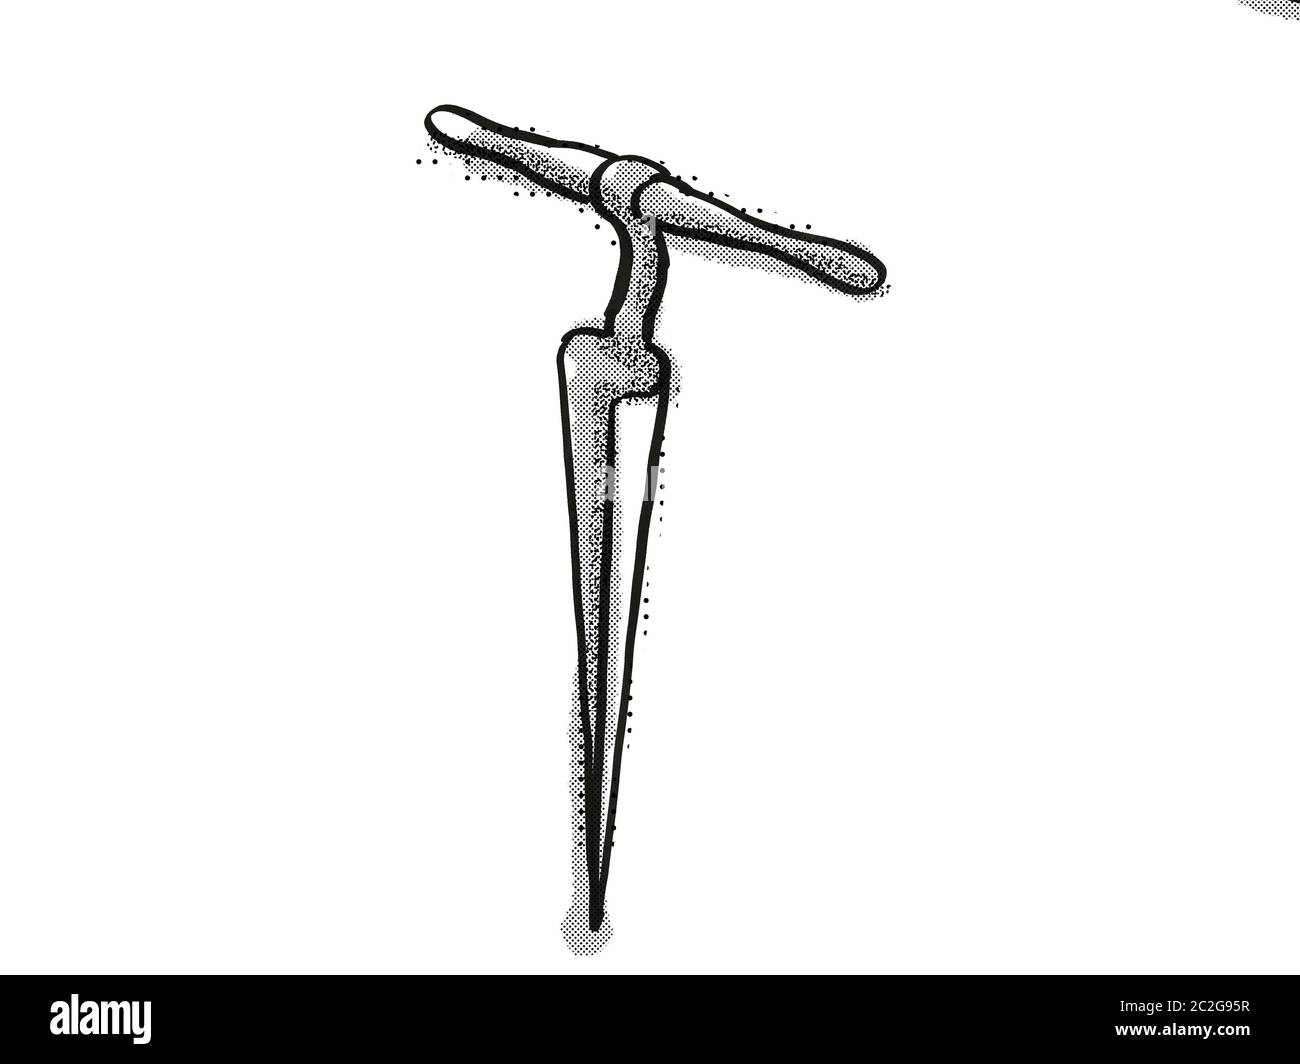 Retro Cartoon Stil Zeichnung der Stellmacher Reibahle, Holzbearbeitung  Werkzeug Hand auf isolierten weißen Hintergrund in Schwarz und Weiß gemacht  Stockfotografie - Alamy